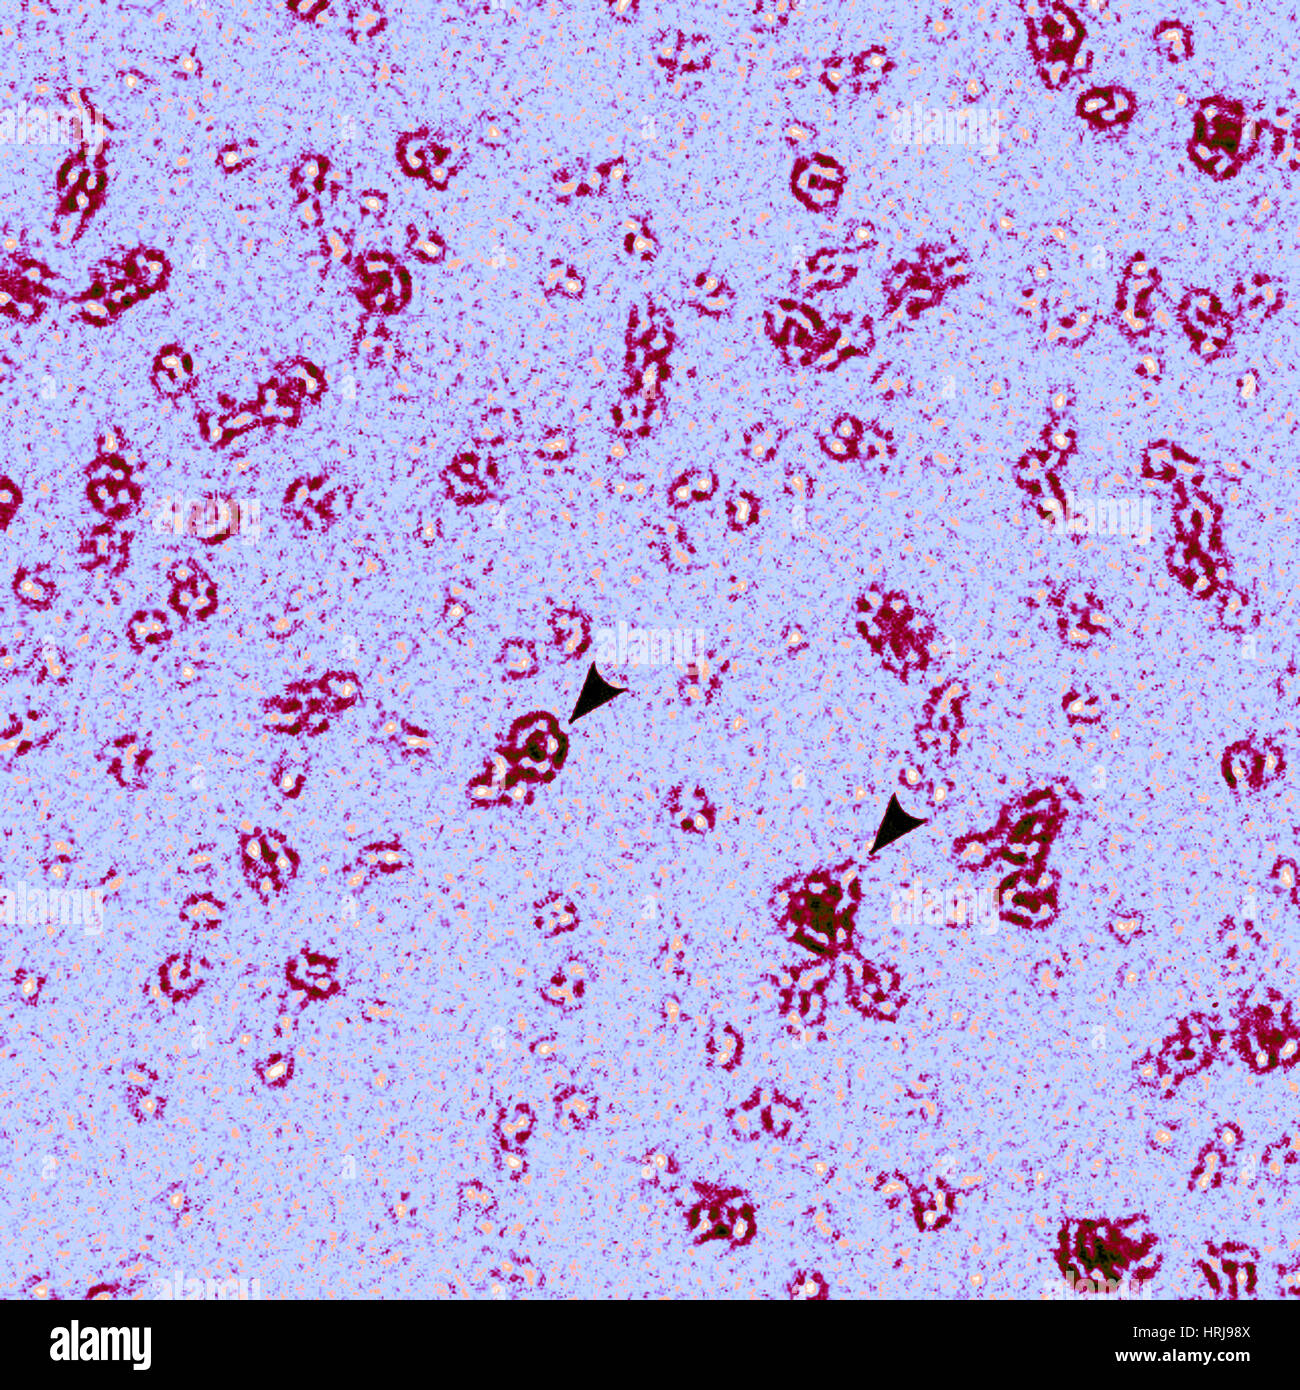 PmpD Protein, Chlamydia Trachomatis Bacteria, TEM Stock Photo